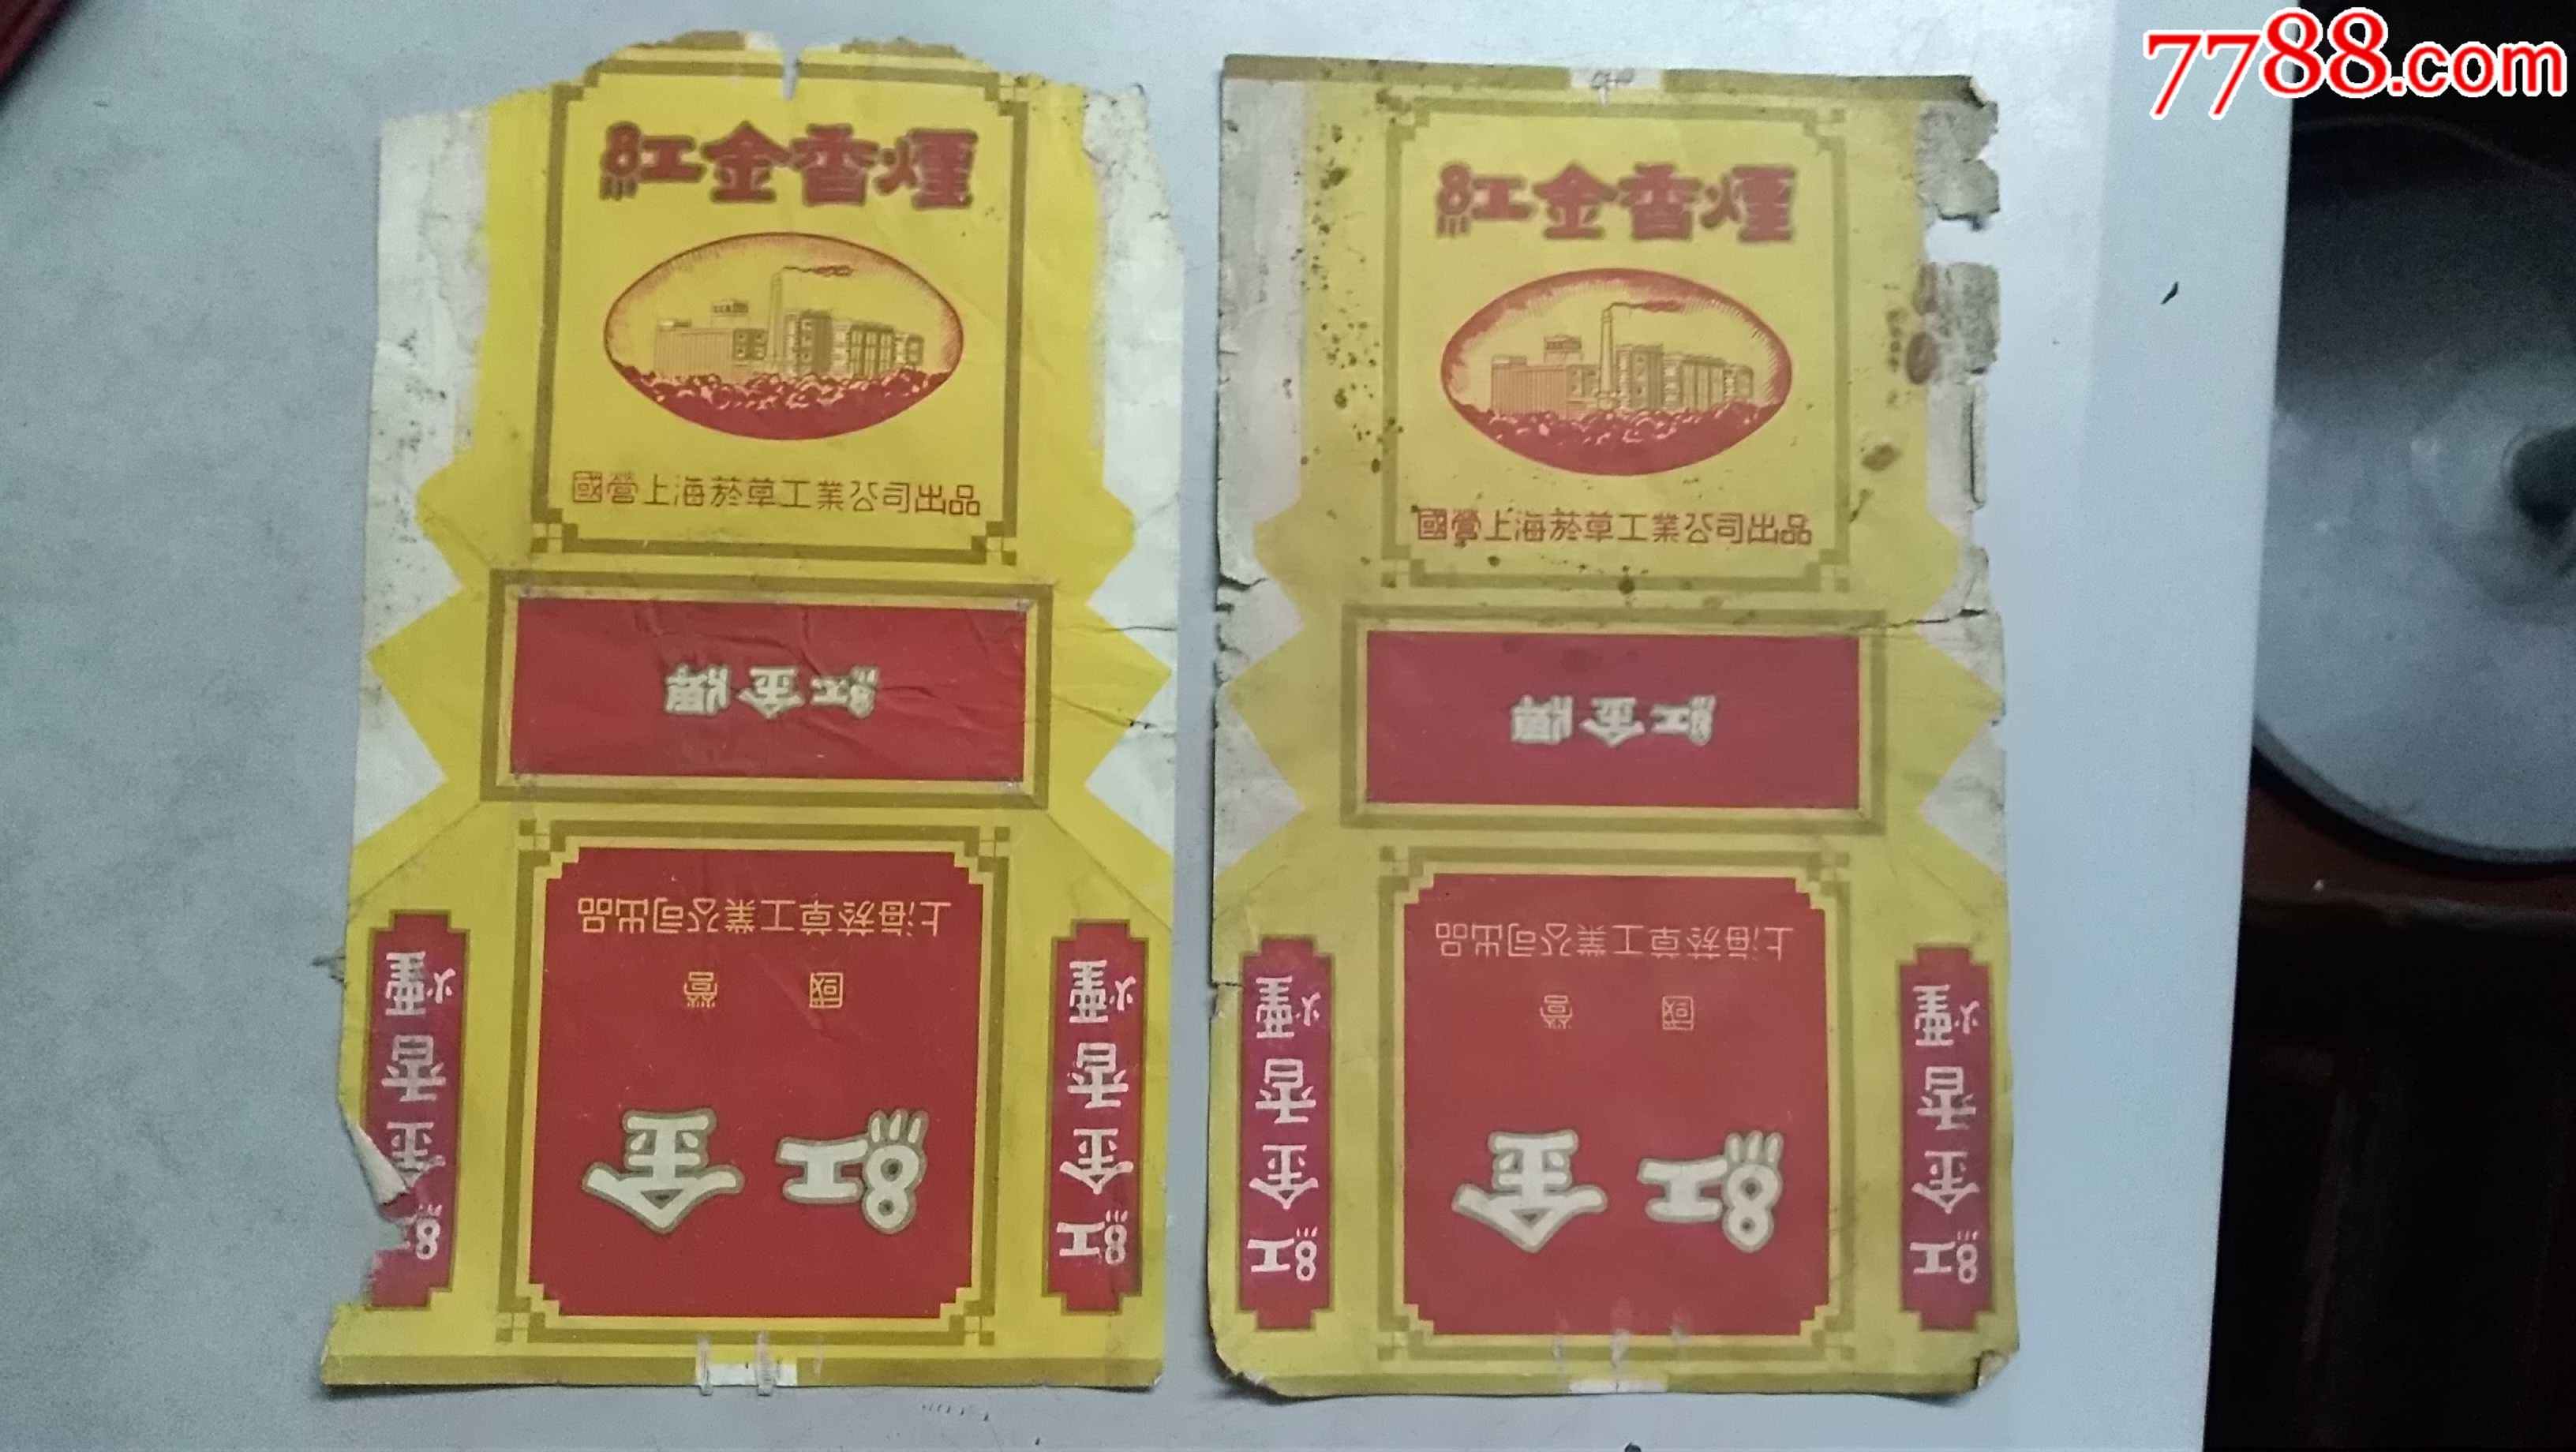 国营上海烟草工业公司出品的红金香烟烟标两张